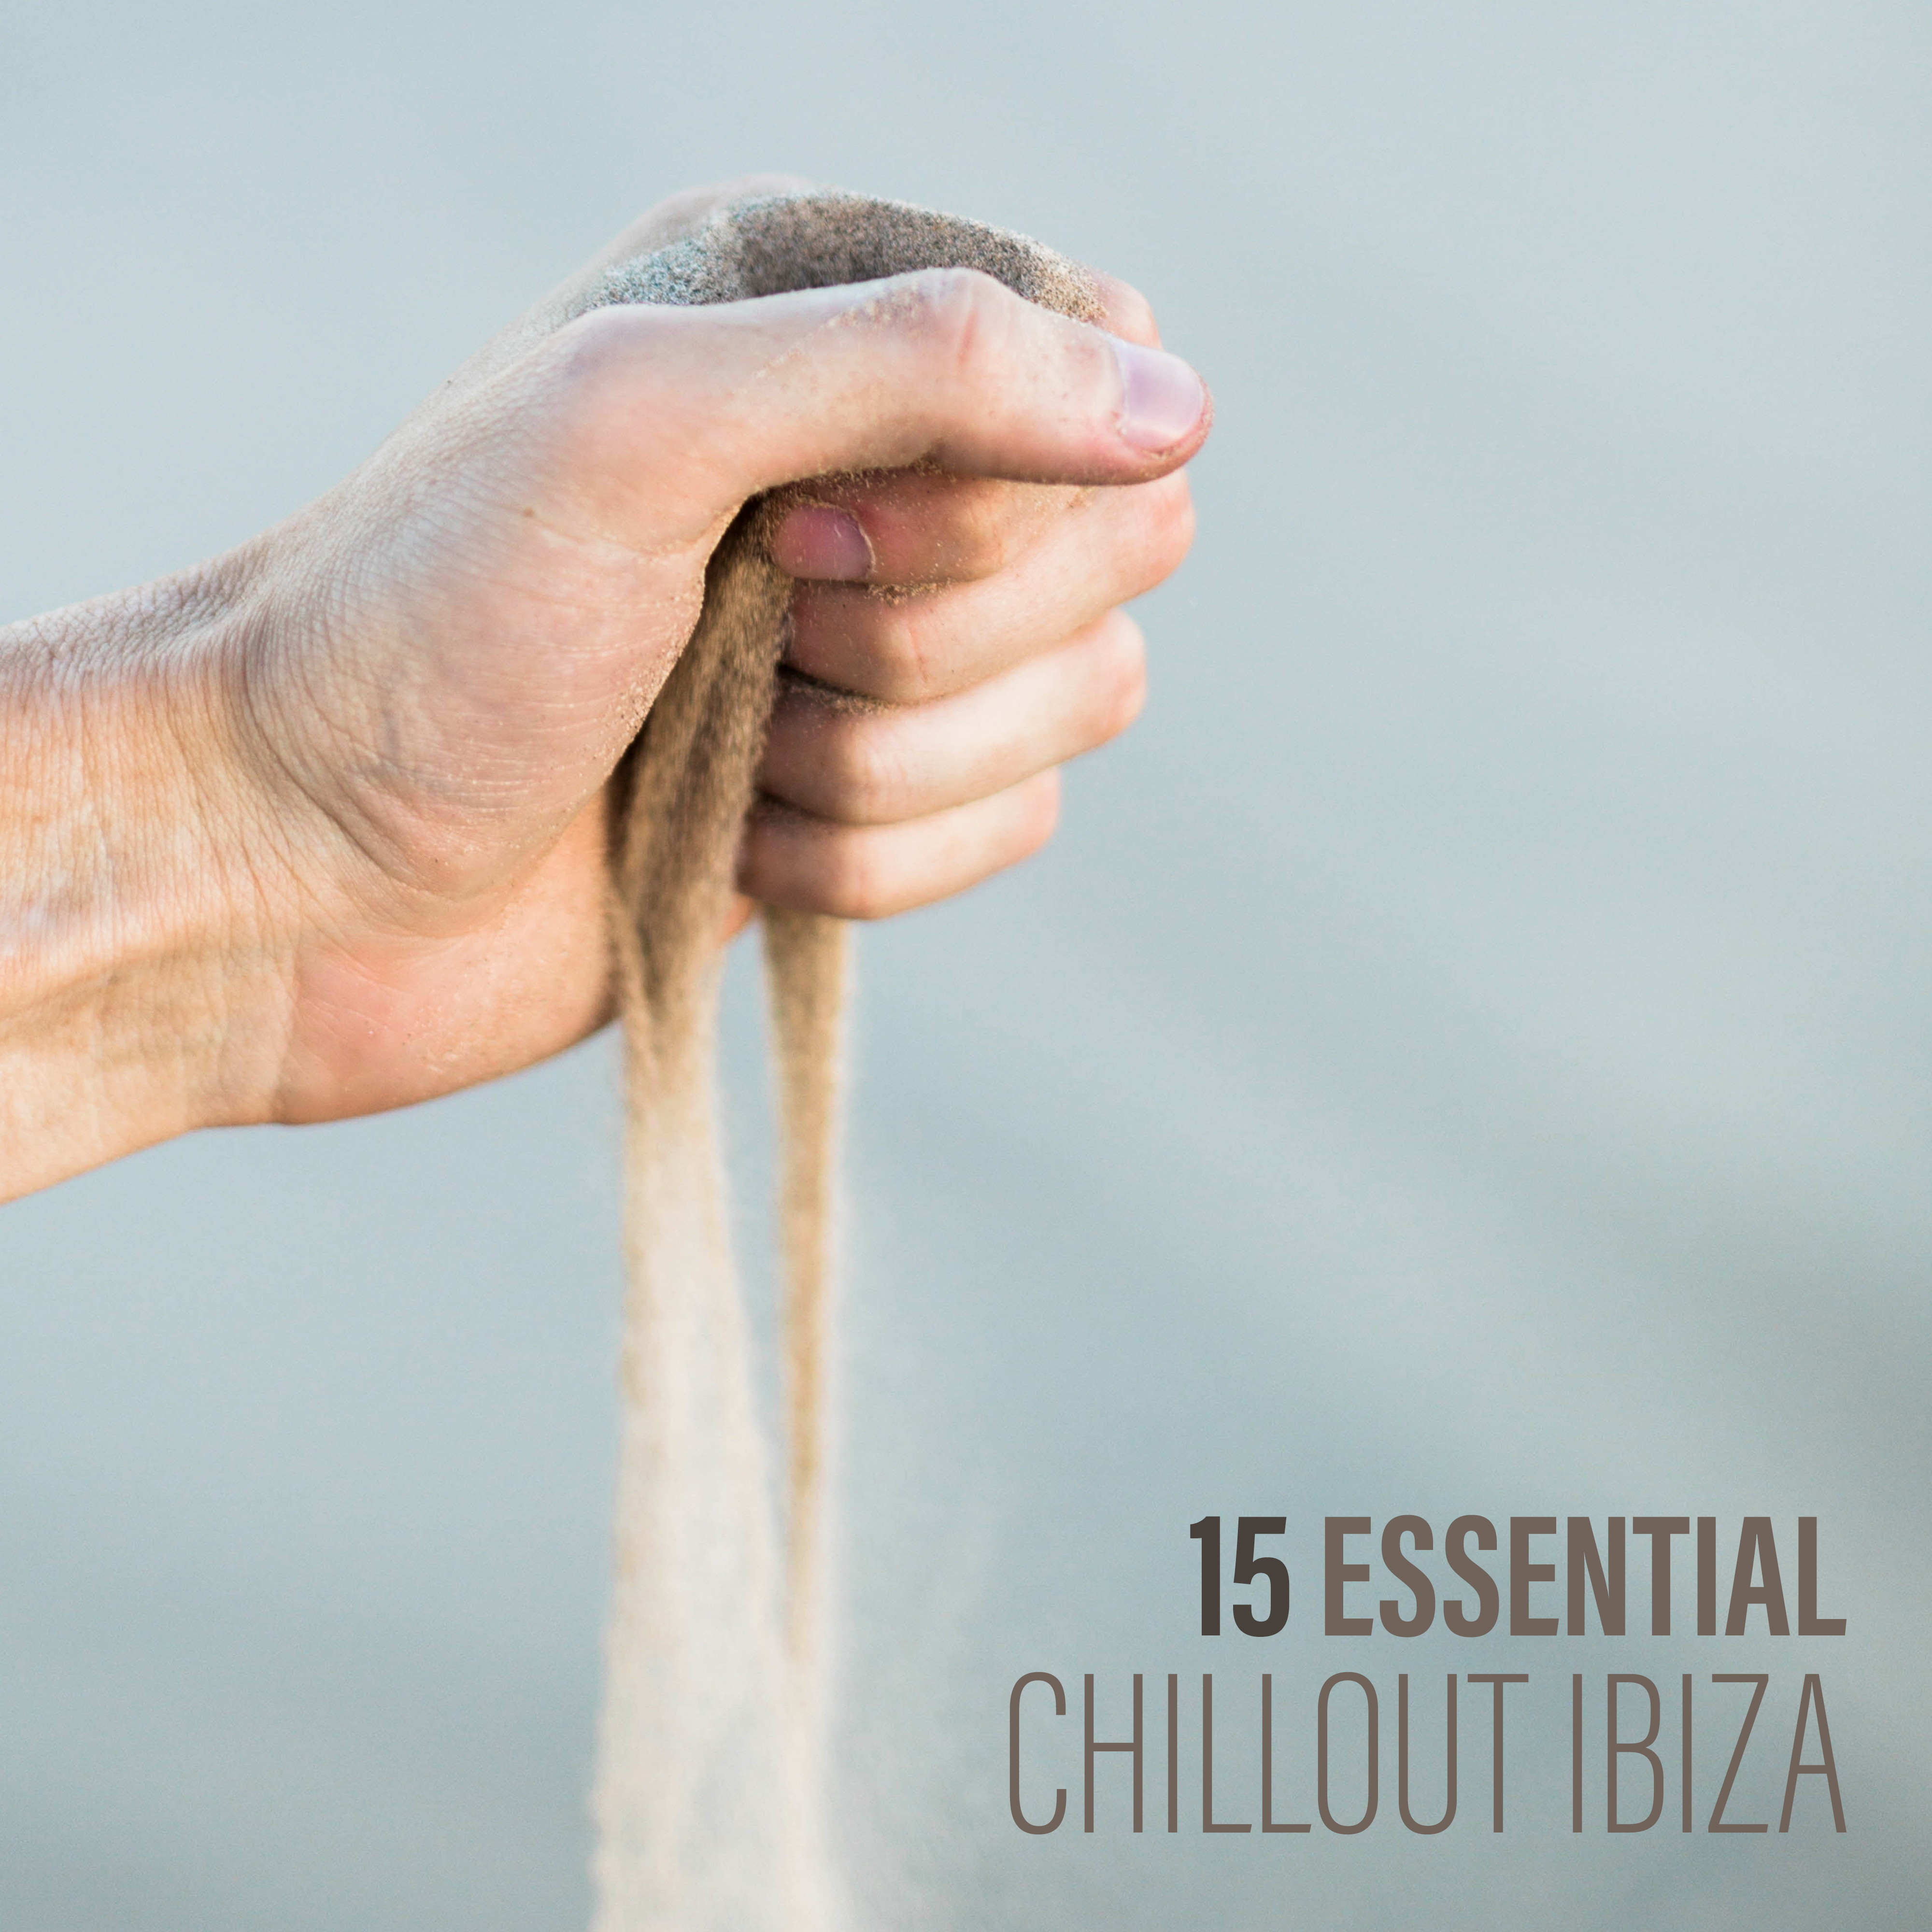 15 Essential Chillout Ibiza